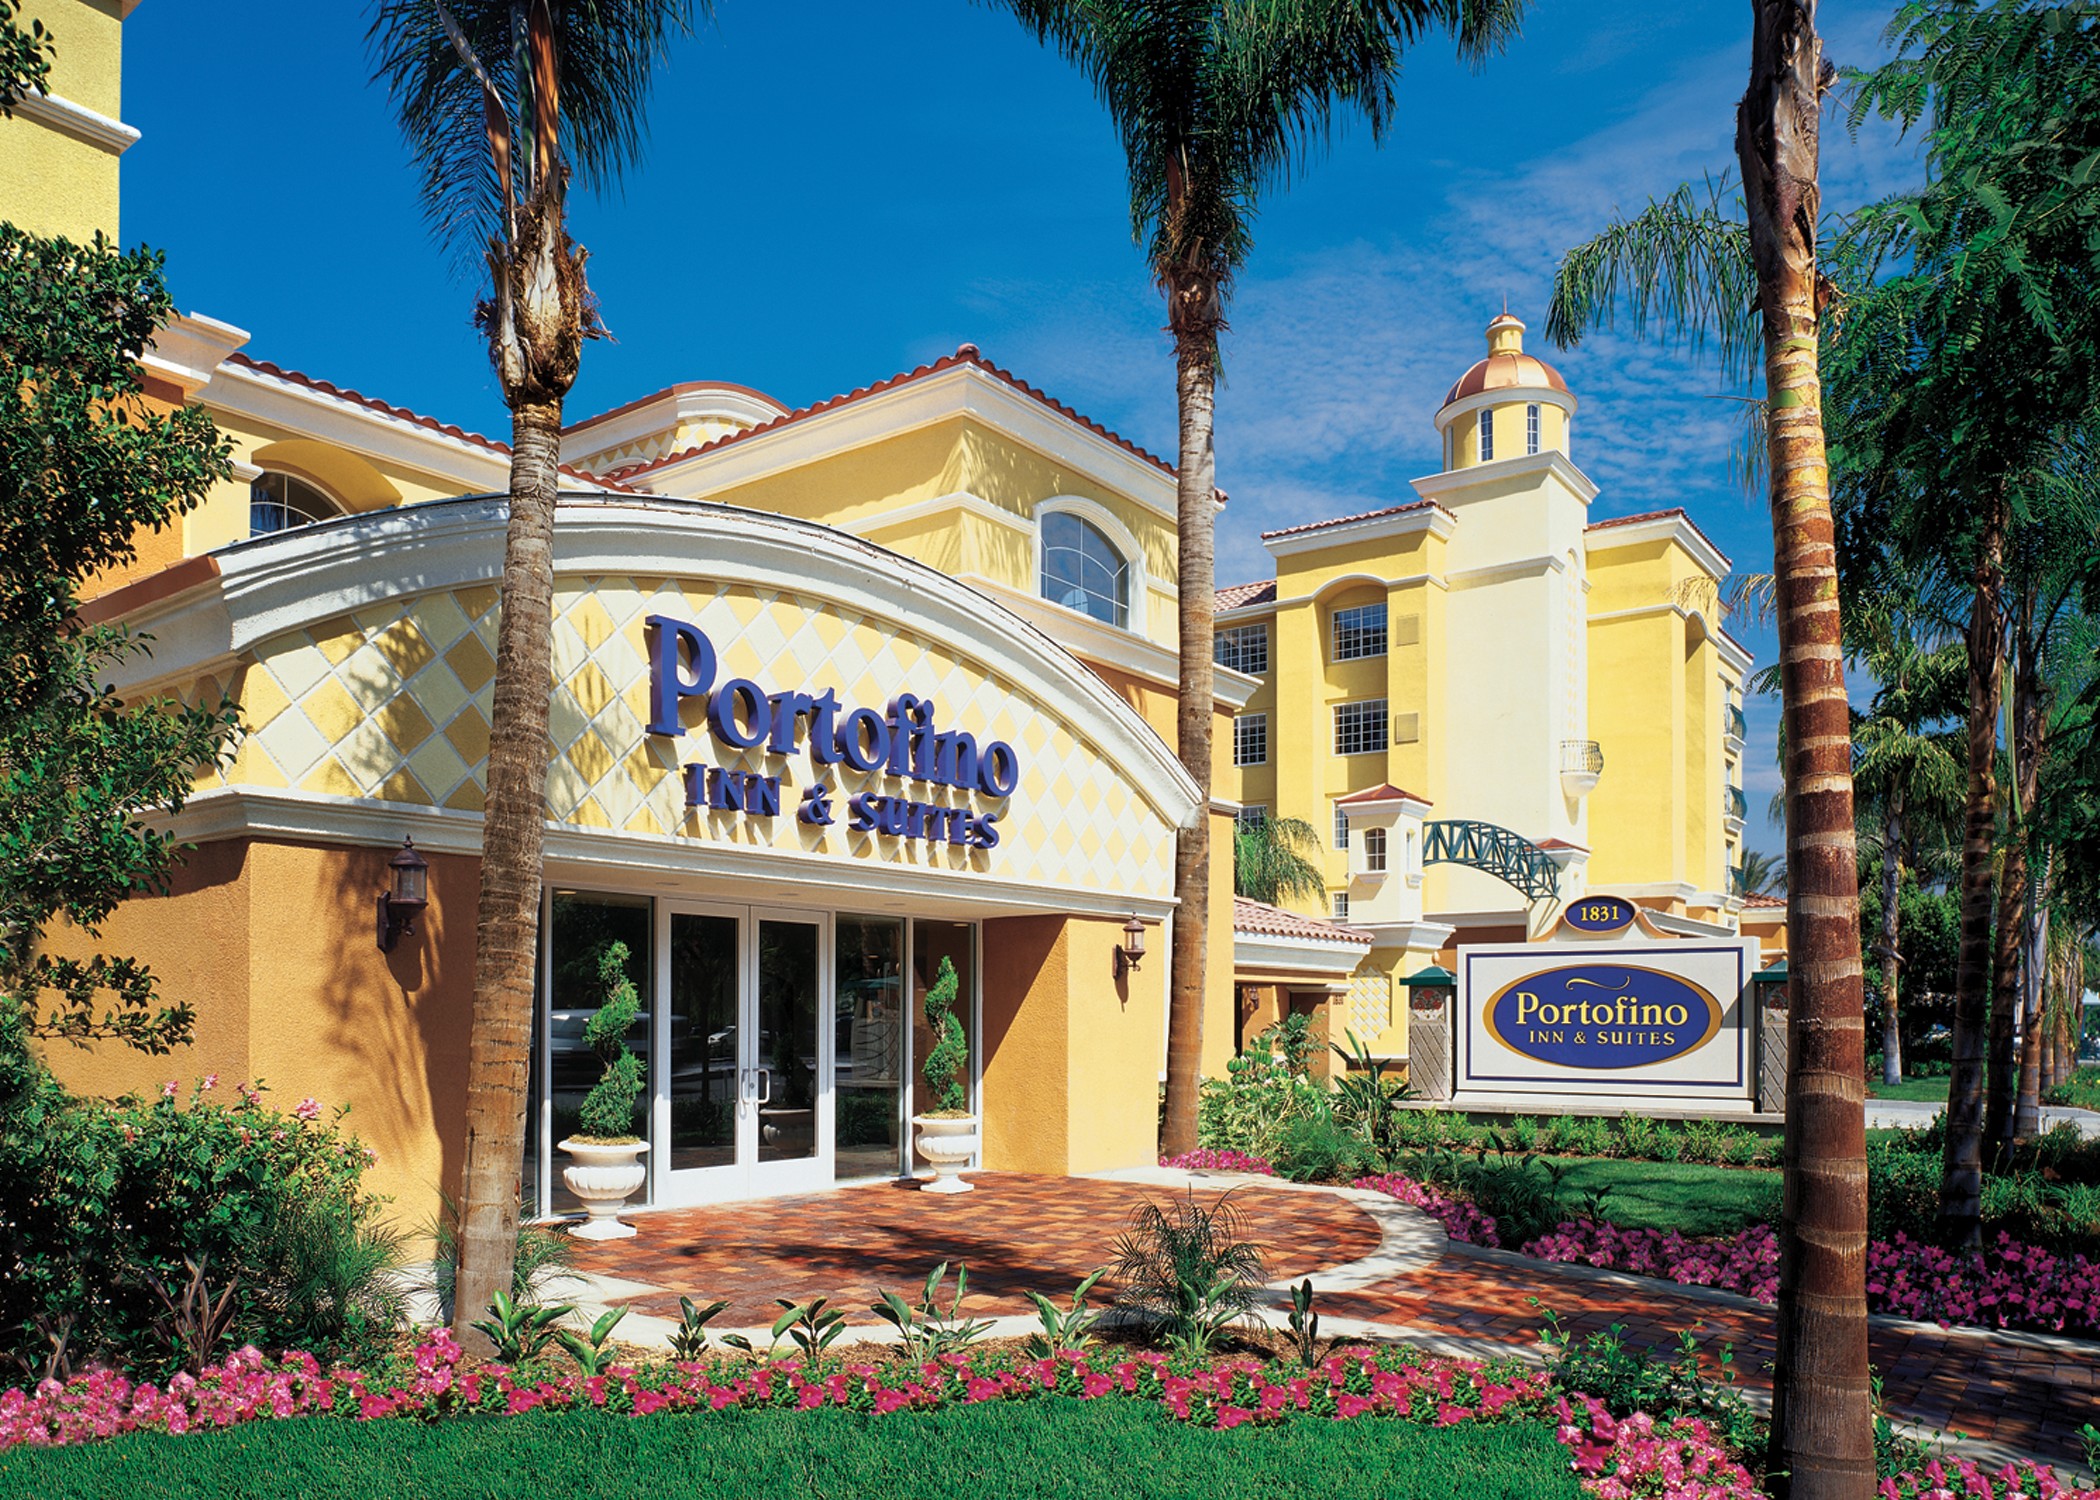 Portofino Inn & Suites